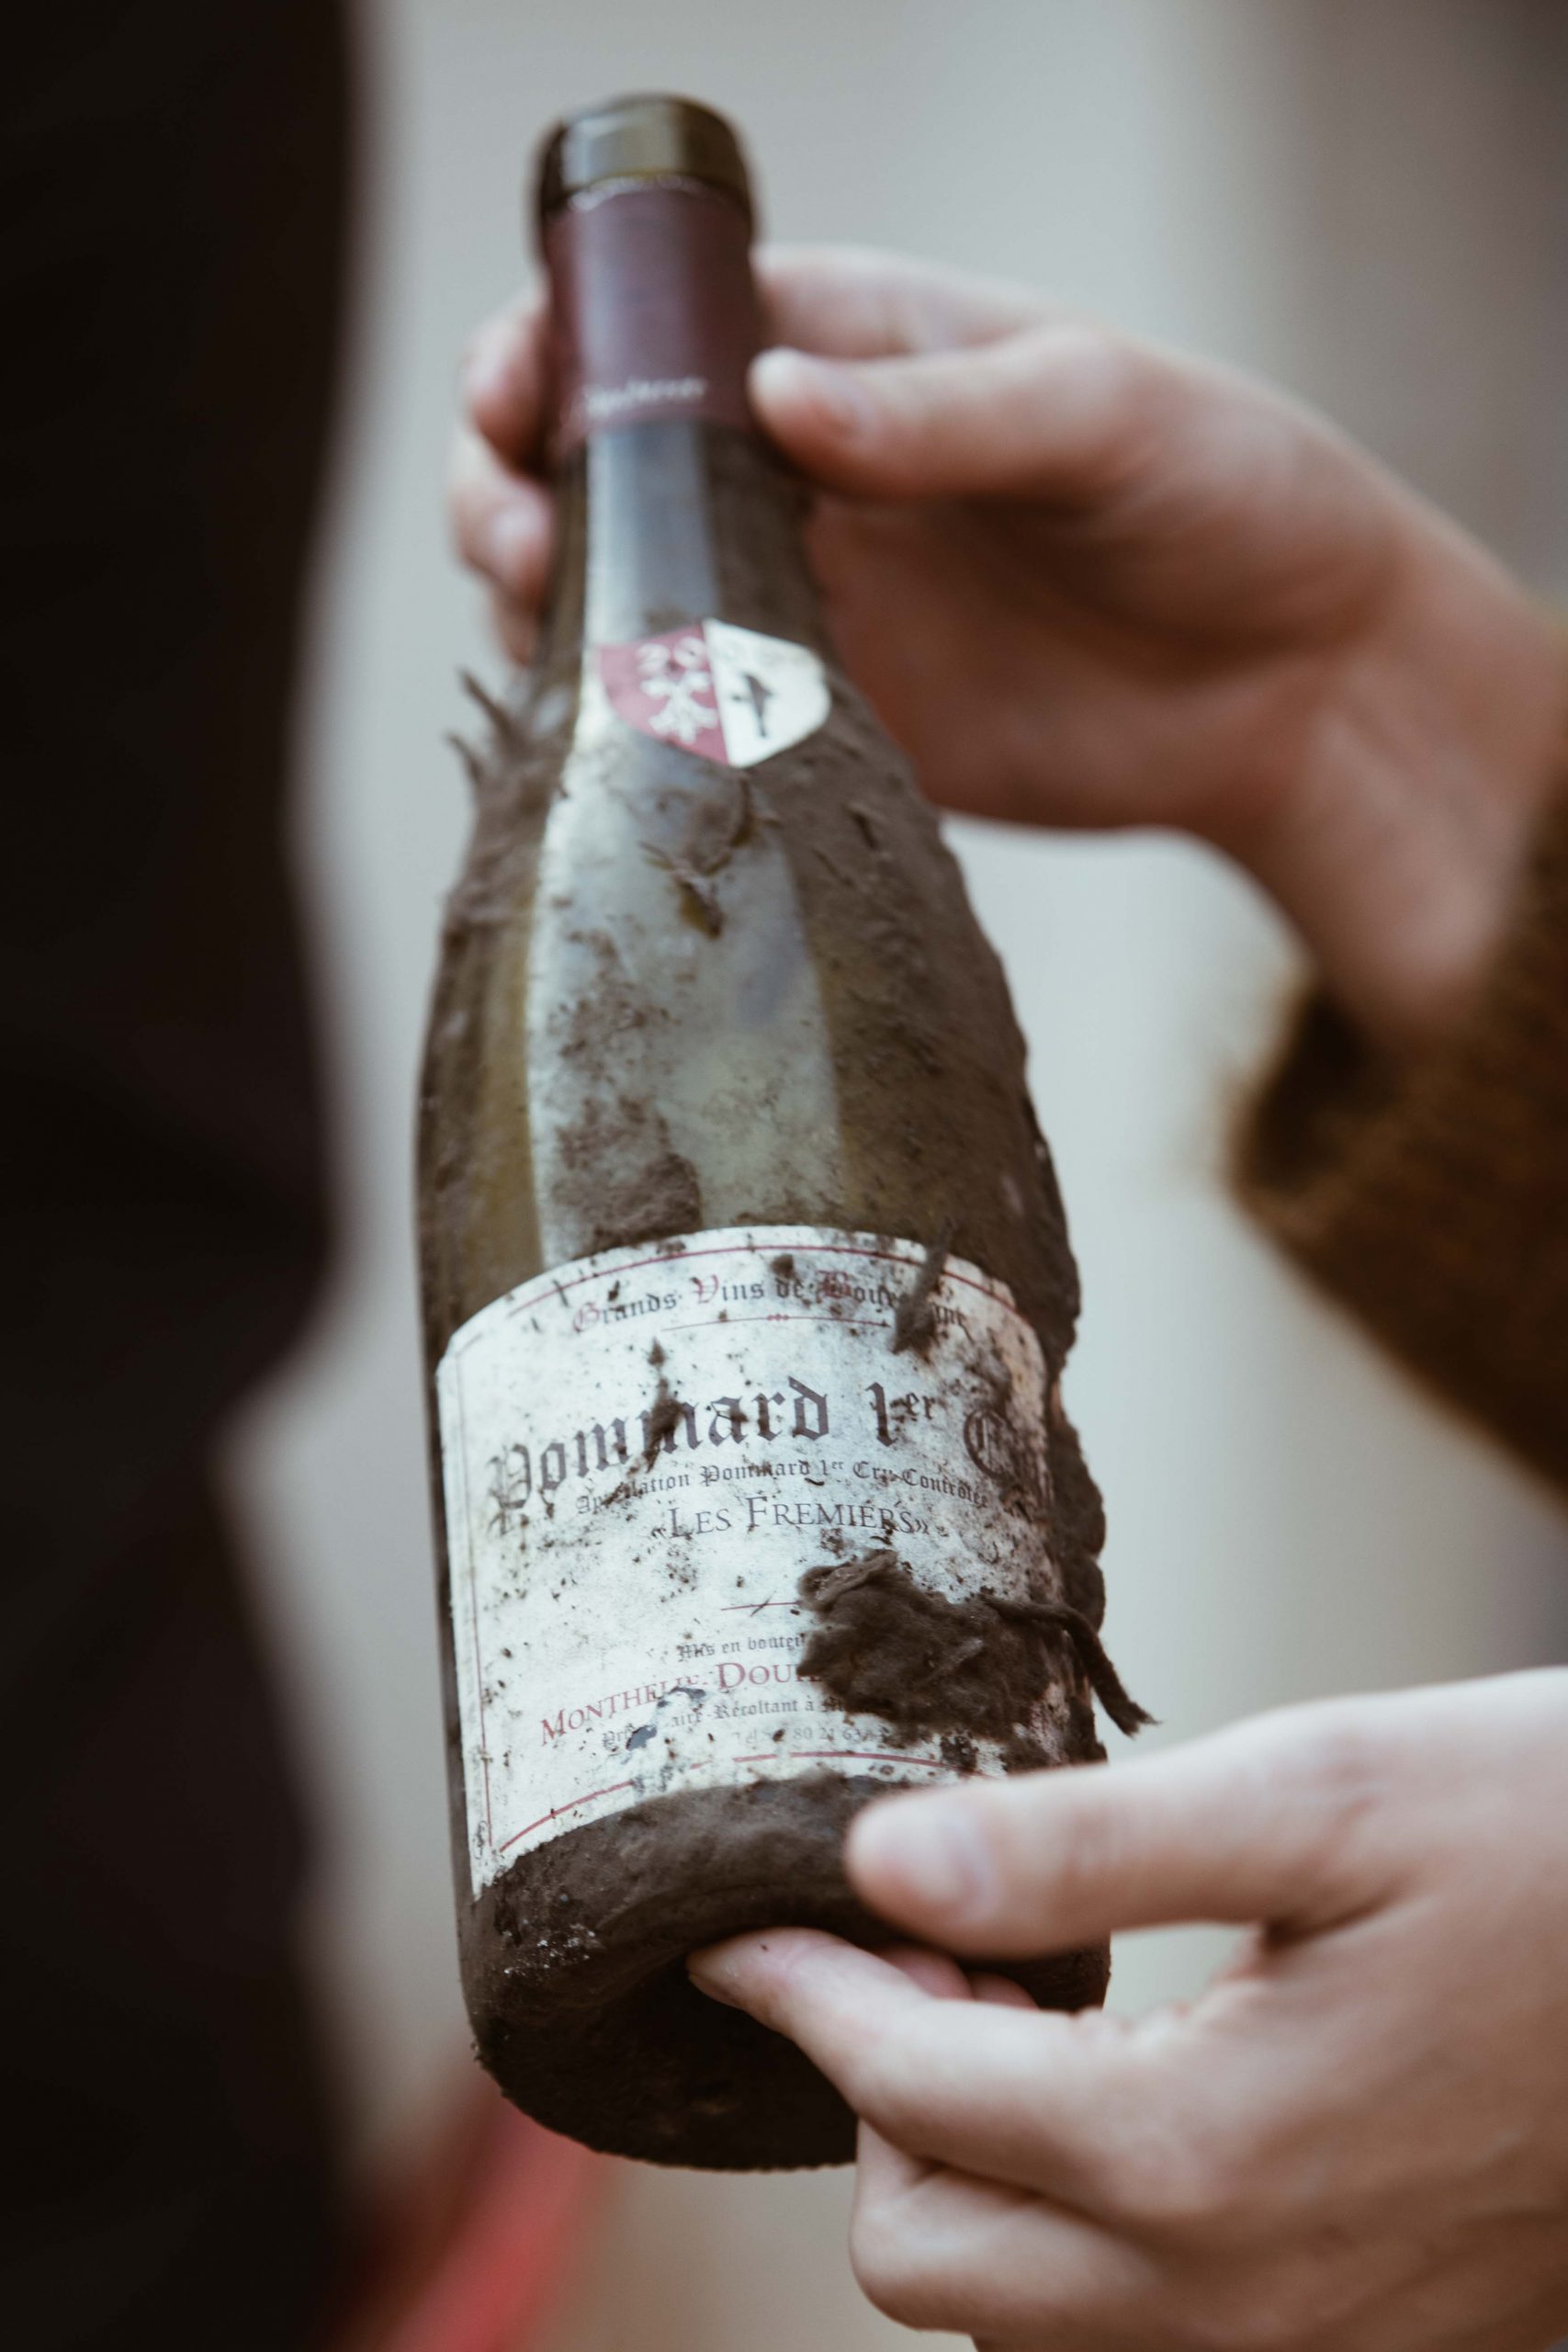 Vin rouge Bourgogne Puligny Montrachet 1er cru - Audin'Shopping